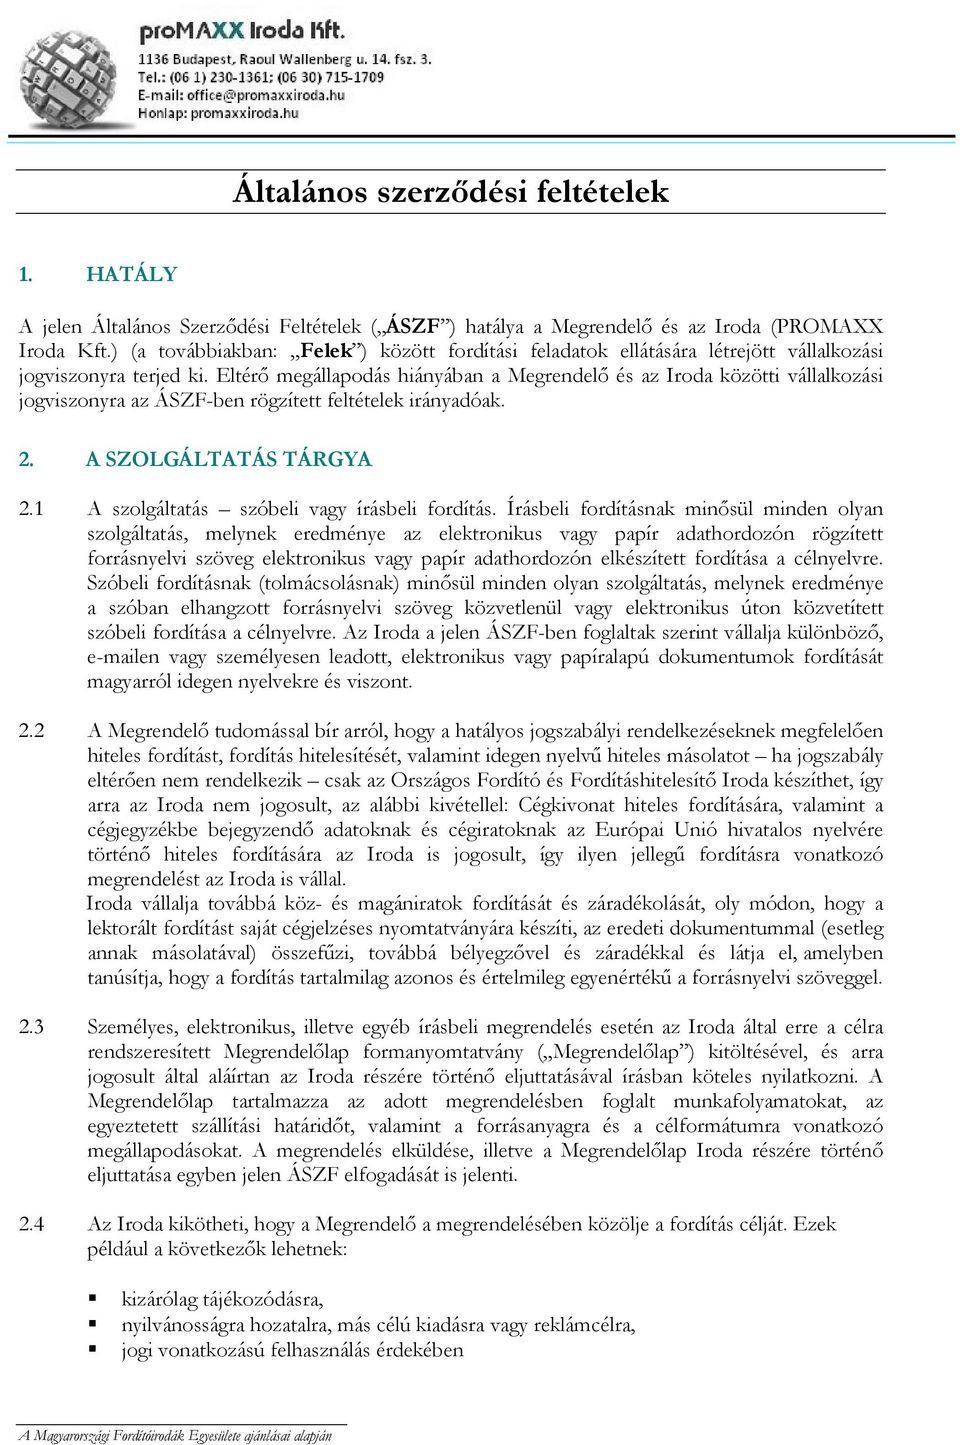 Eltérı megállapodás hiányában a Megrendelı és az Iroda közötti vállalkozási jogviszonyra az ÁSZF-ben rögzített feltételek irányadóak. 2. A SZOLGÁLTATÁS TÁRGYA 2.